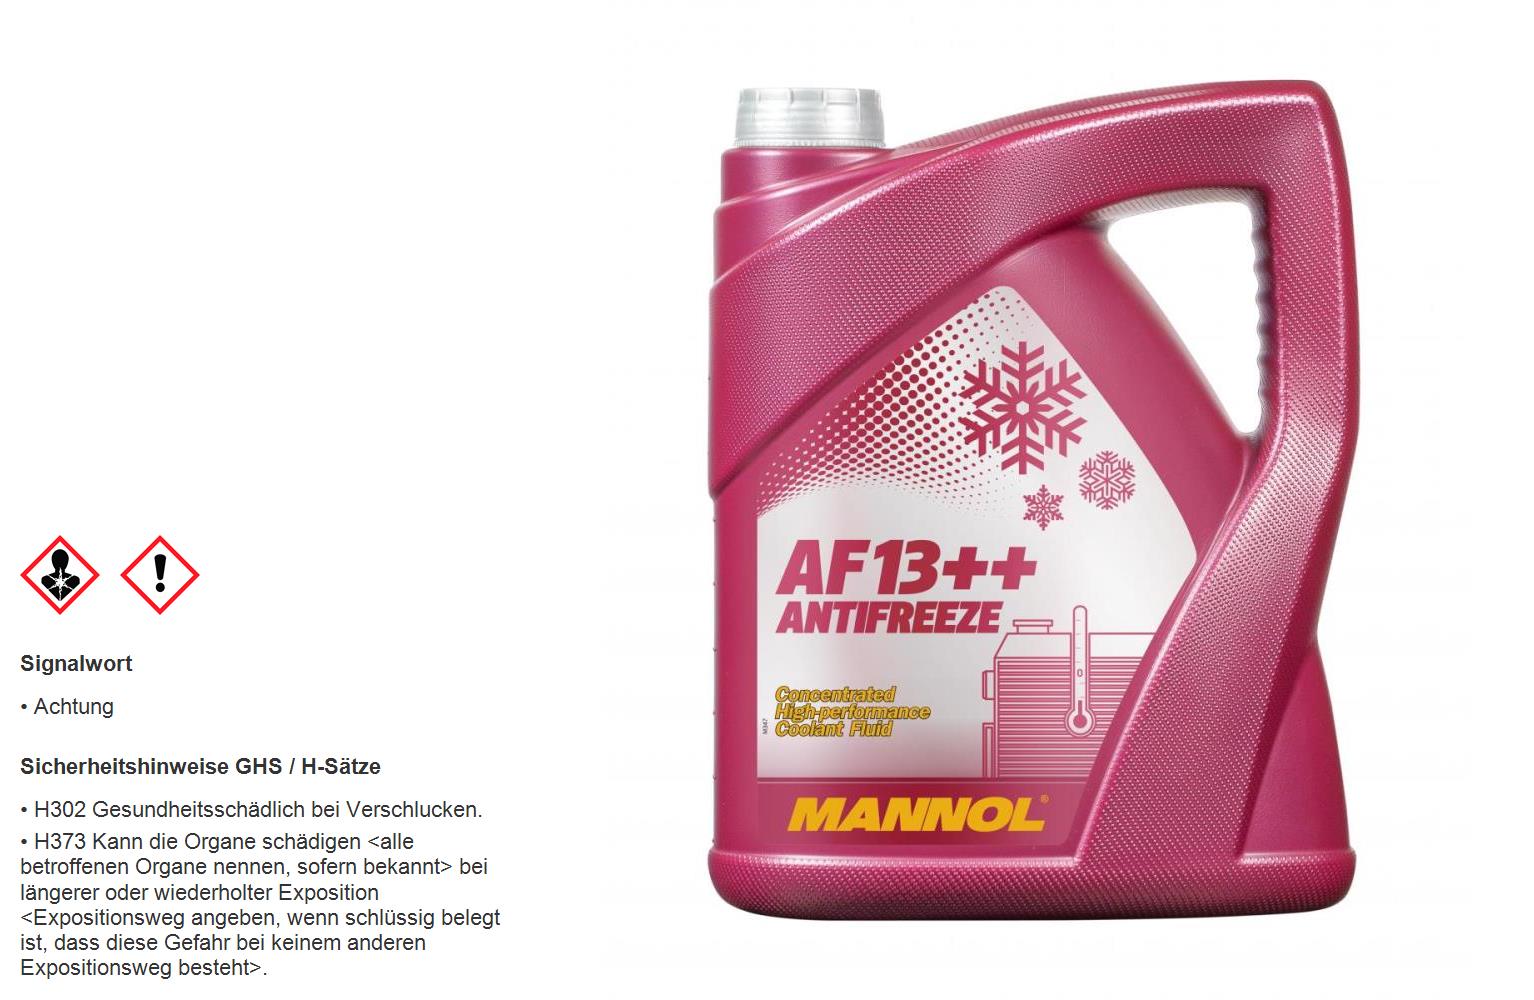 MANNOL 5 Liter AF13++ Antifreeze (High-performance) Kühlerfrostschutz